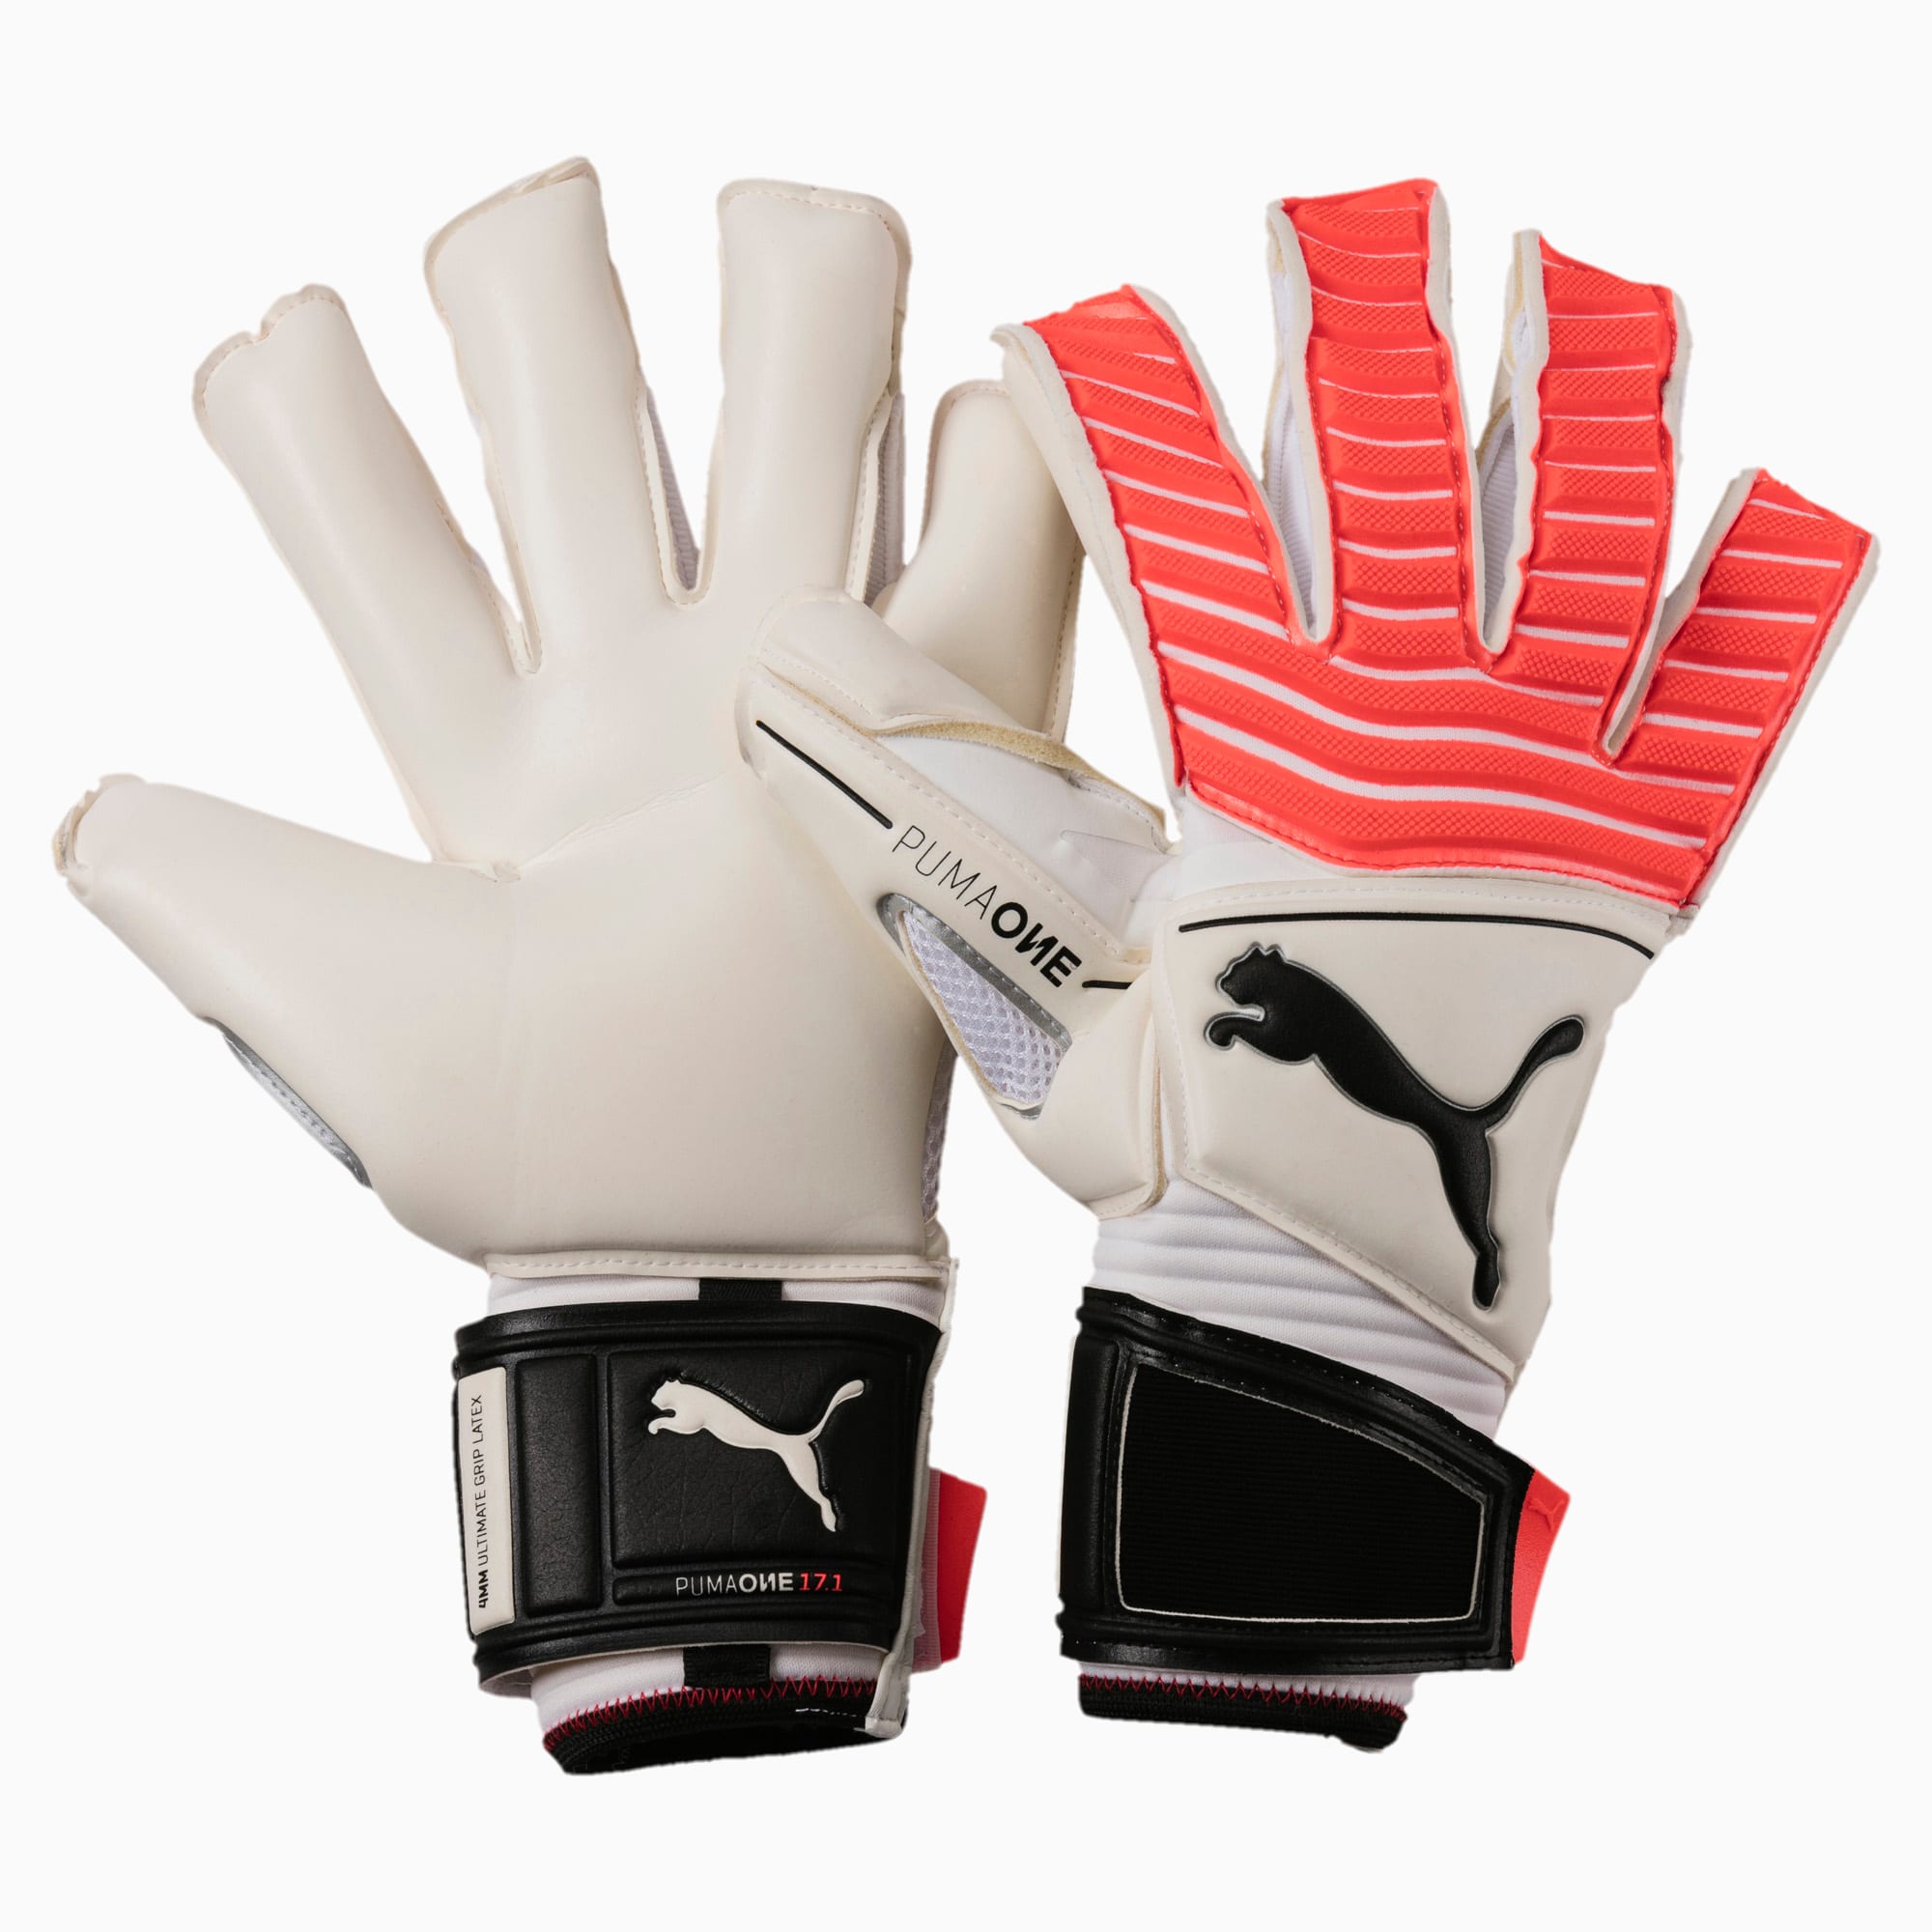 ONE Grip 17.1 Soccer Goalie's Gloves 